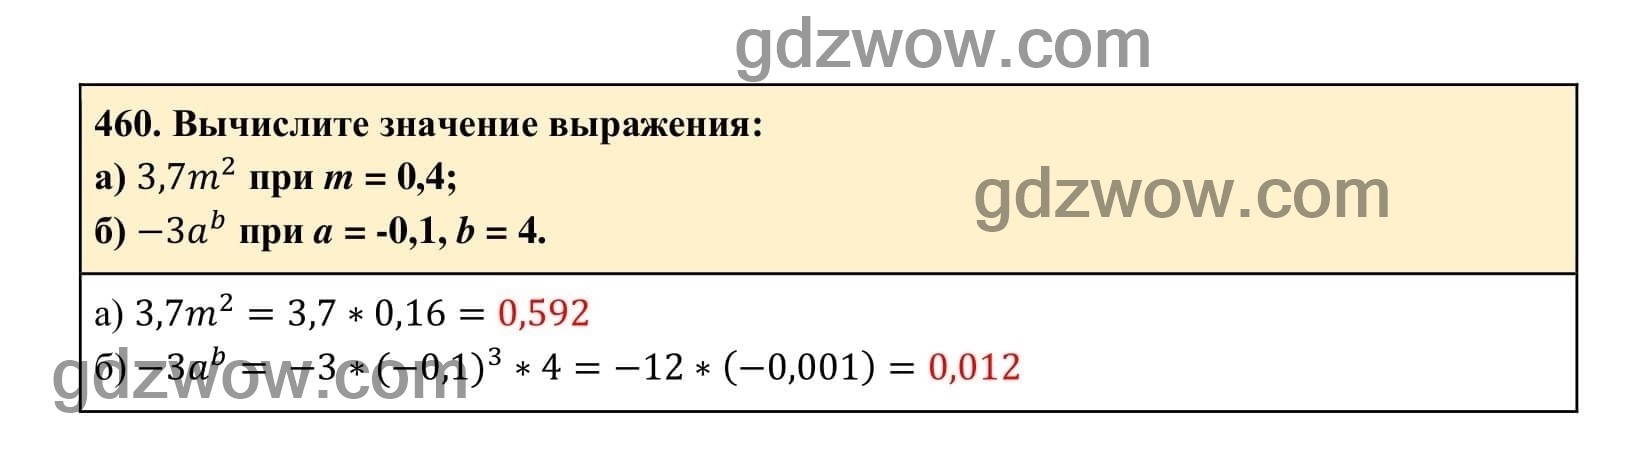 Упражнение 460 - ГДЗ по Алгебре 7 класс Учебник Макарычев (решебник) - GDZwow